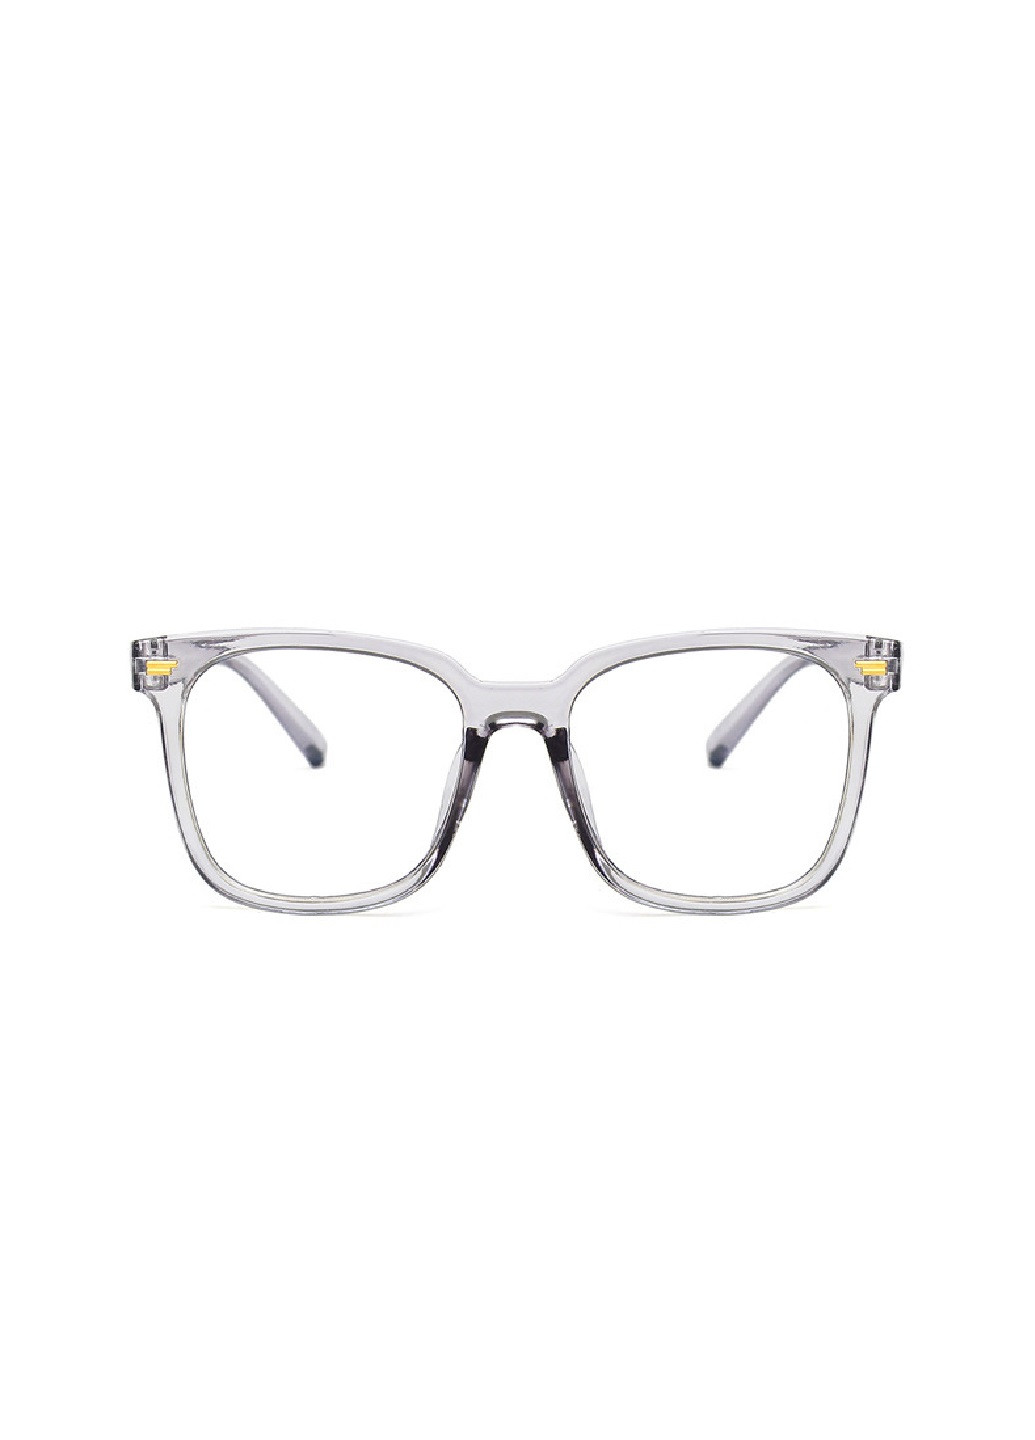 Имиджевые очки A&Co. серые